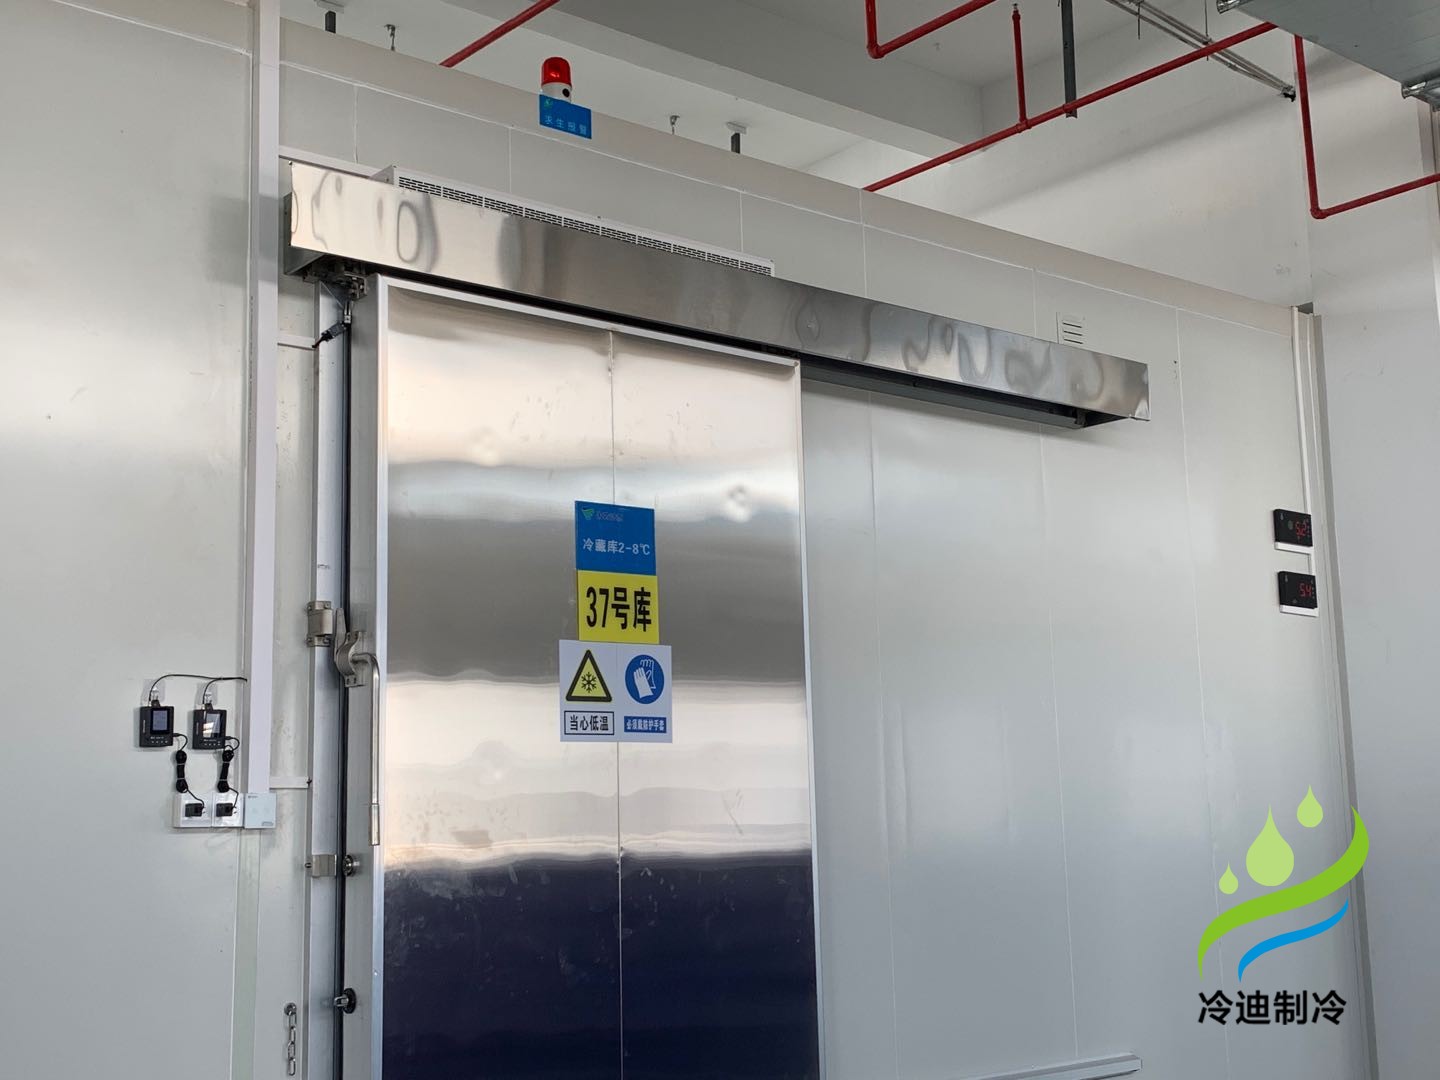 上海沃凱生物國藥2-8℃醫藥試劑冷庫安裝工程